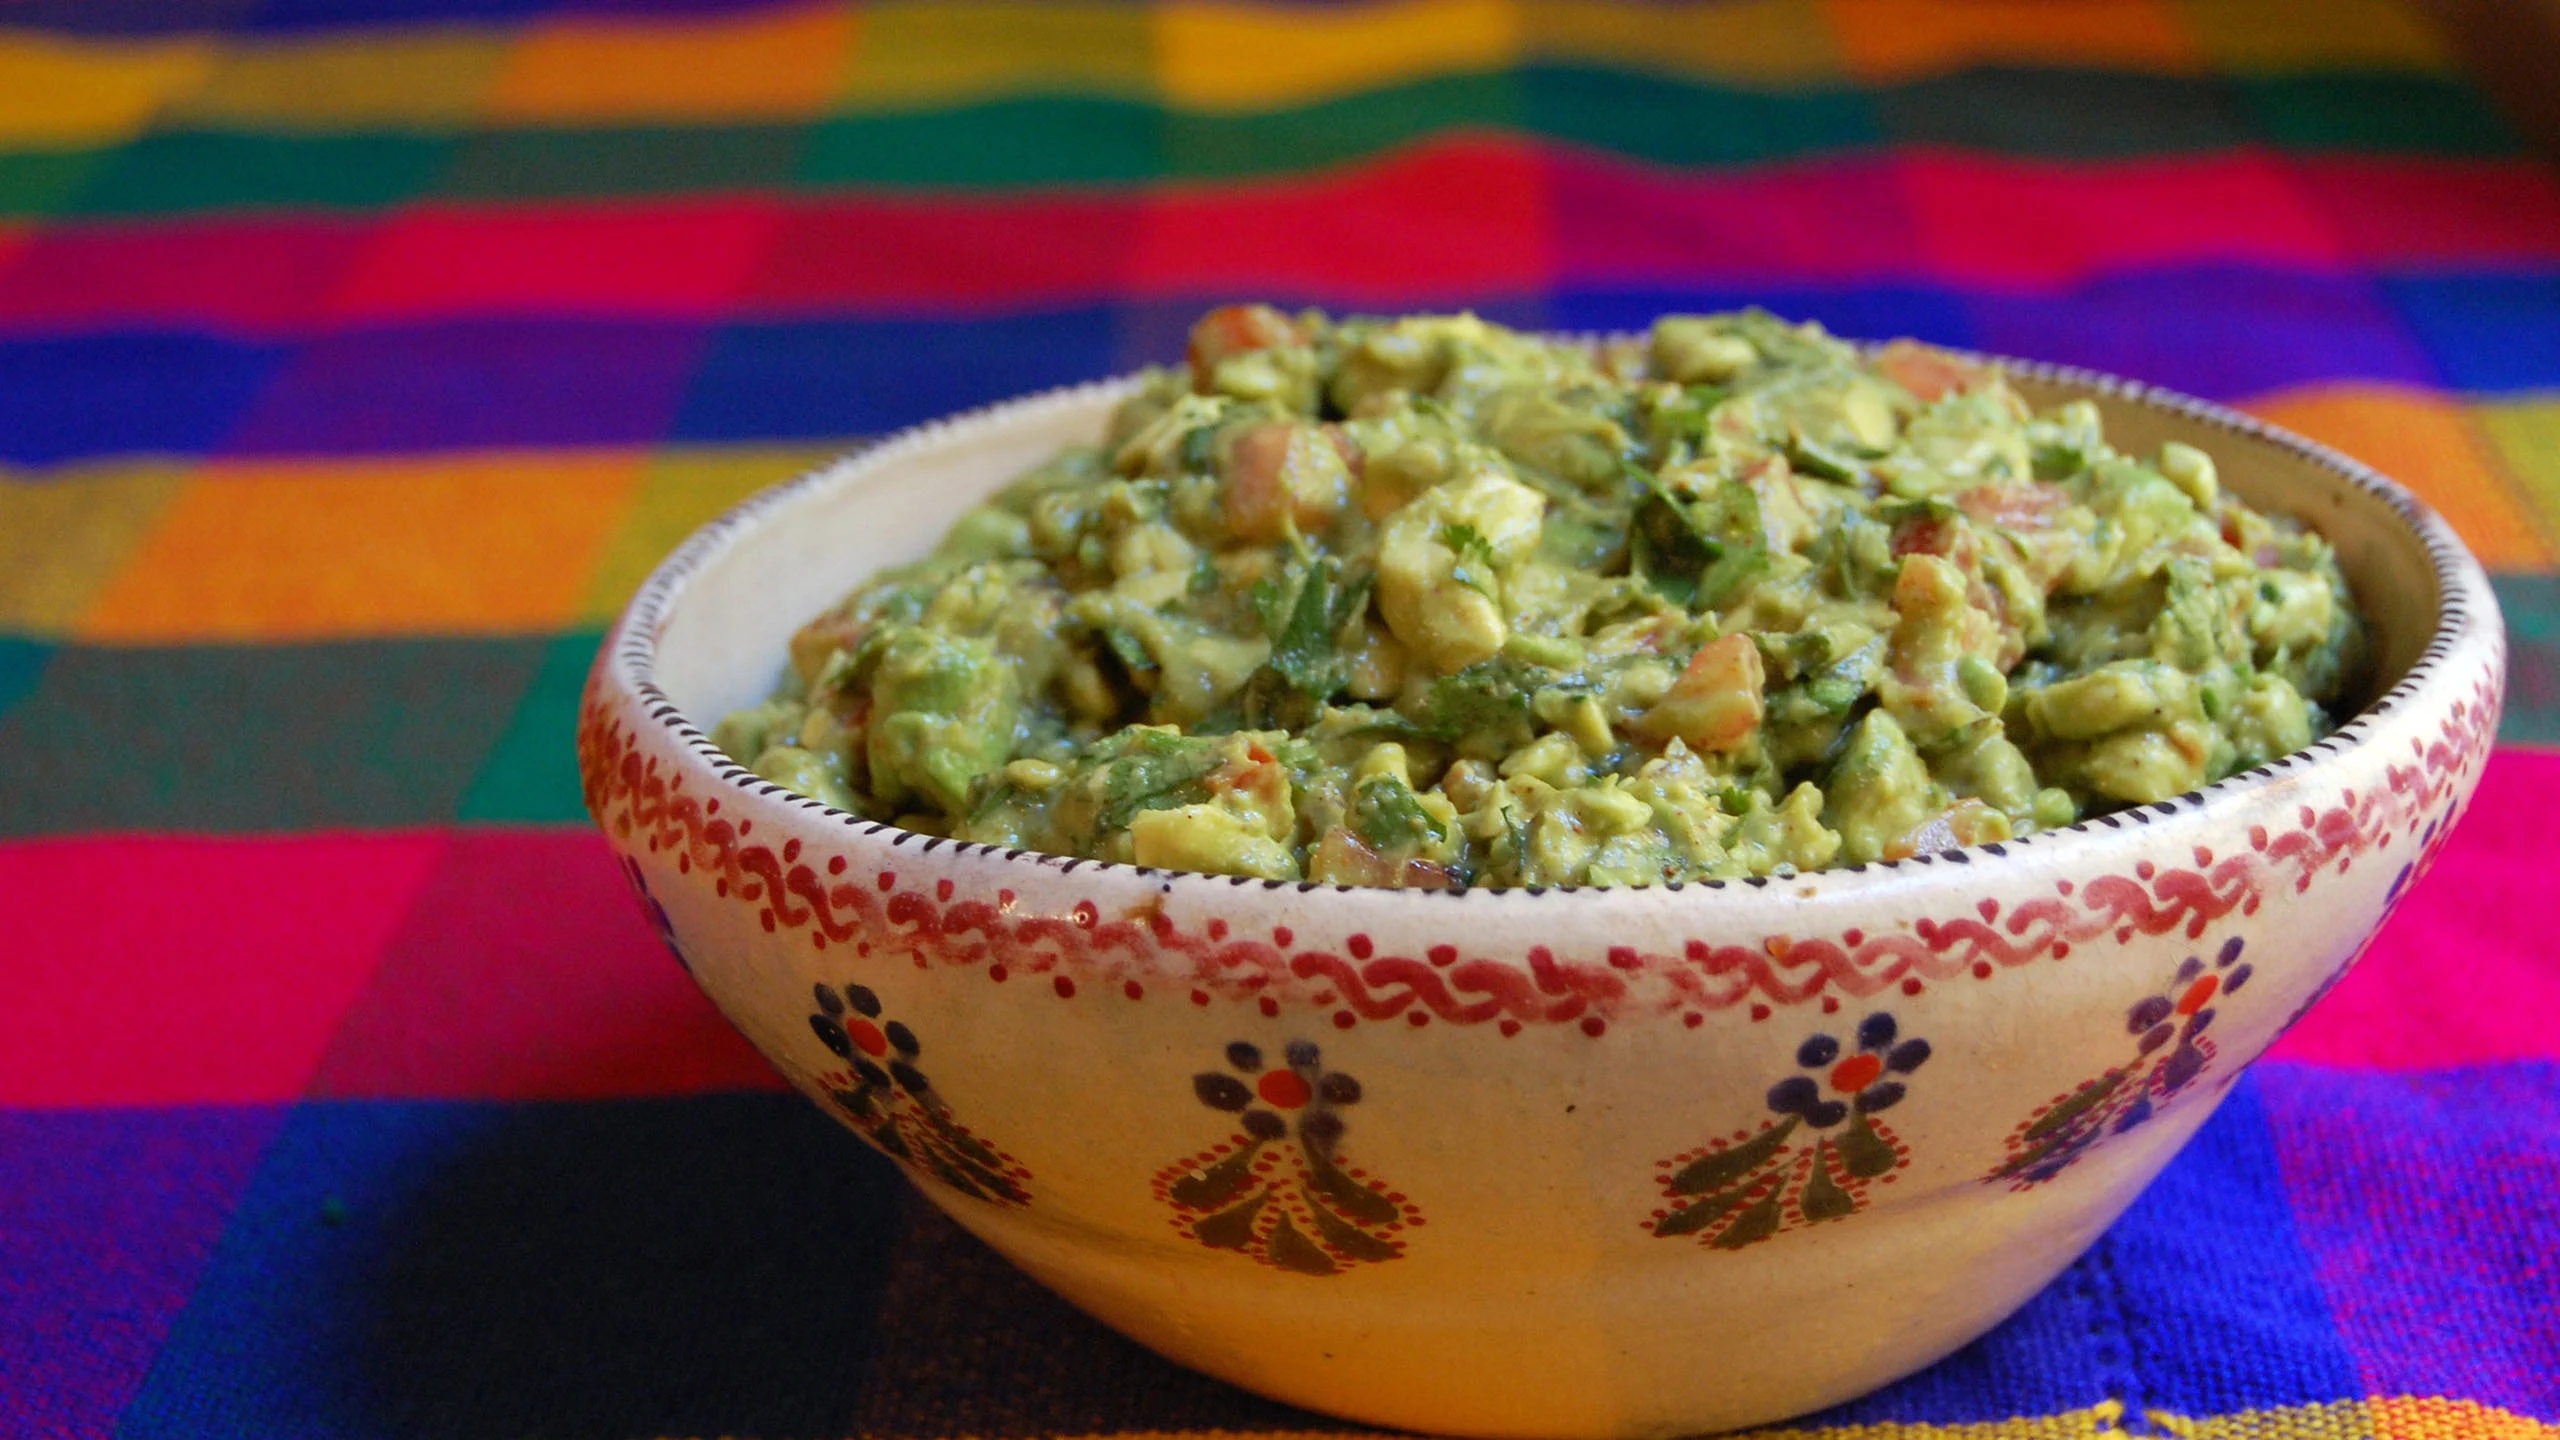 La nueva manera “saludable” de preparar guacamole: brocomole